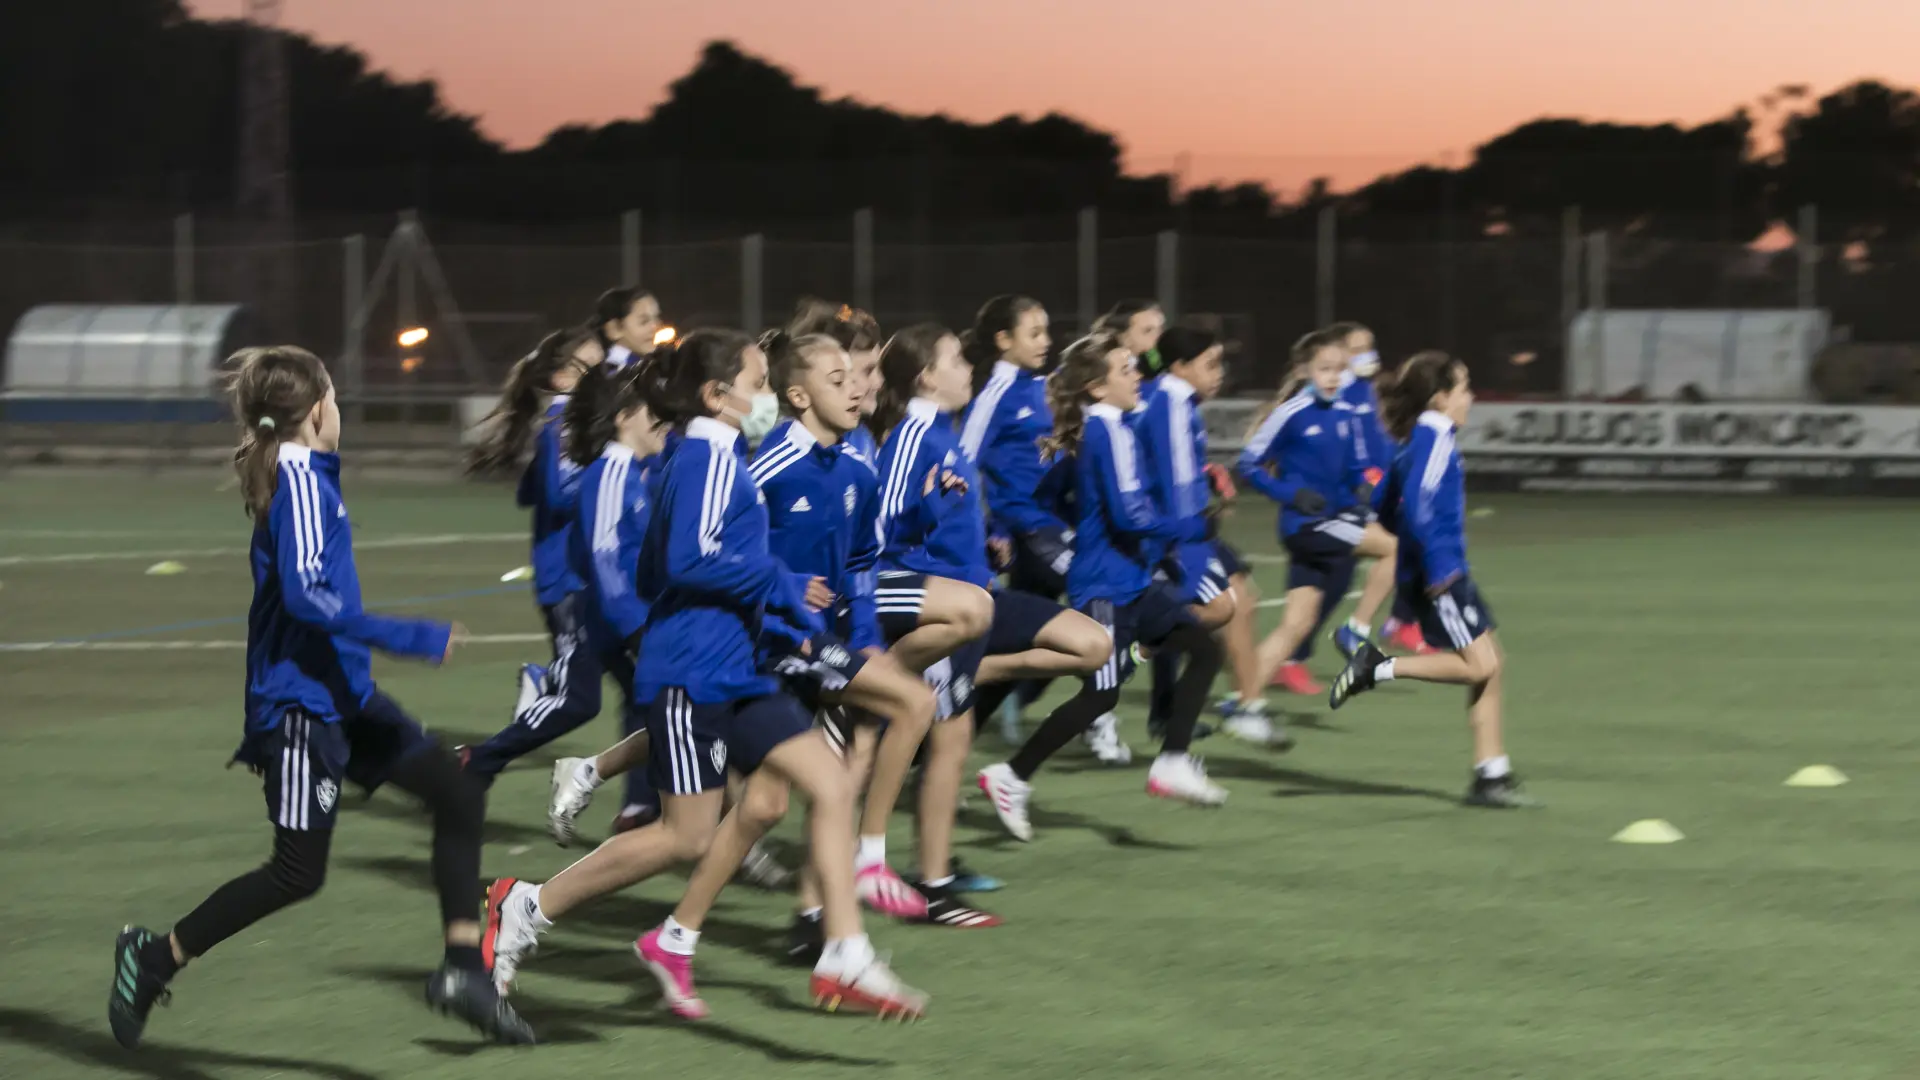 Presentación de la Escuela de Fútbol Femenino del Real Zaragoza.